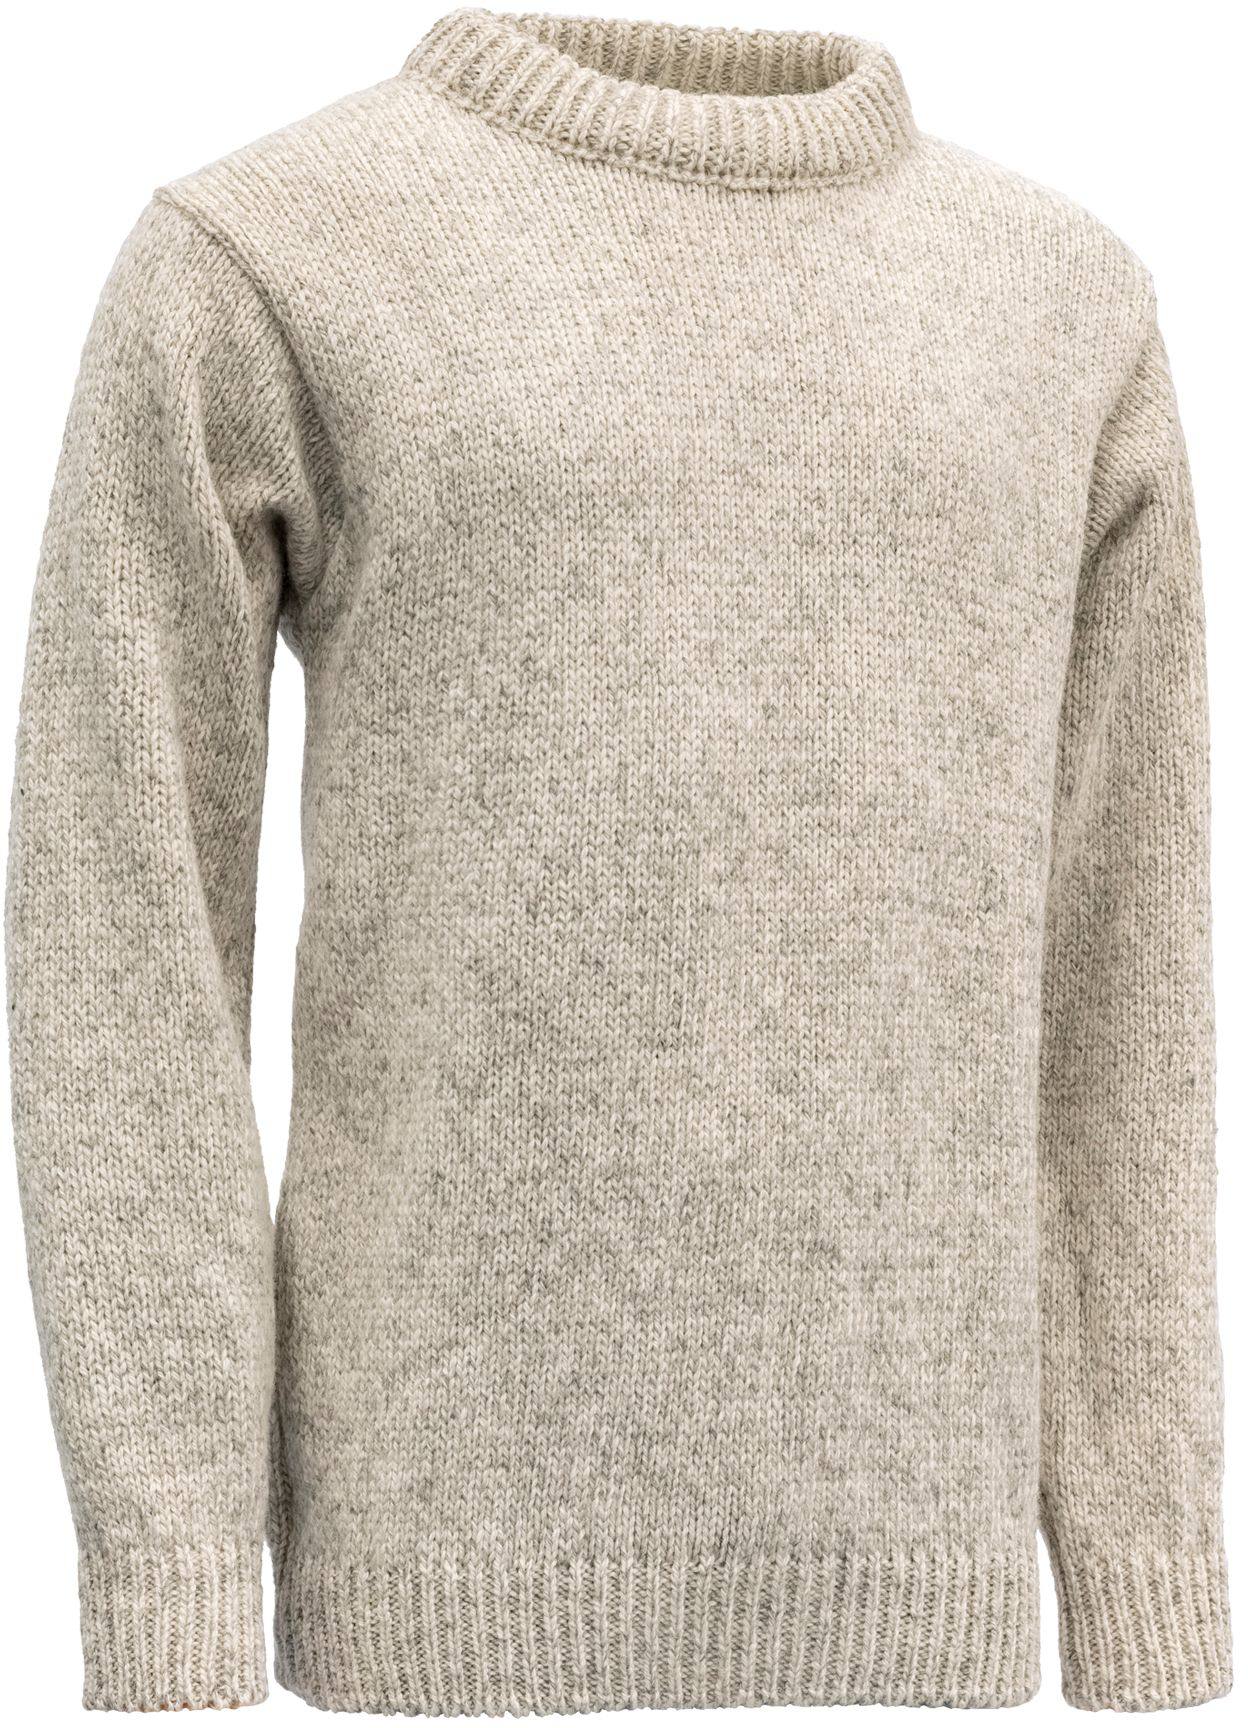 Devold Nansen Sweater